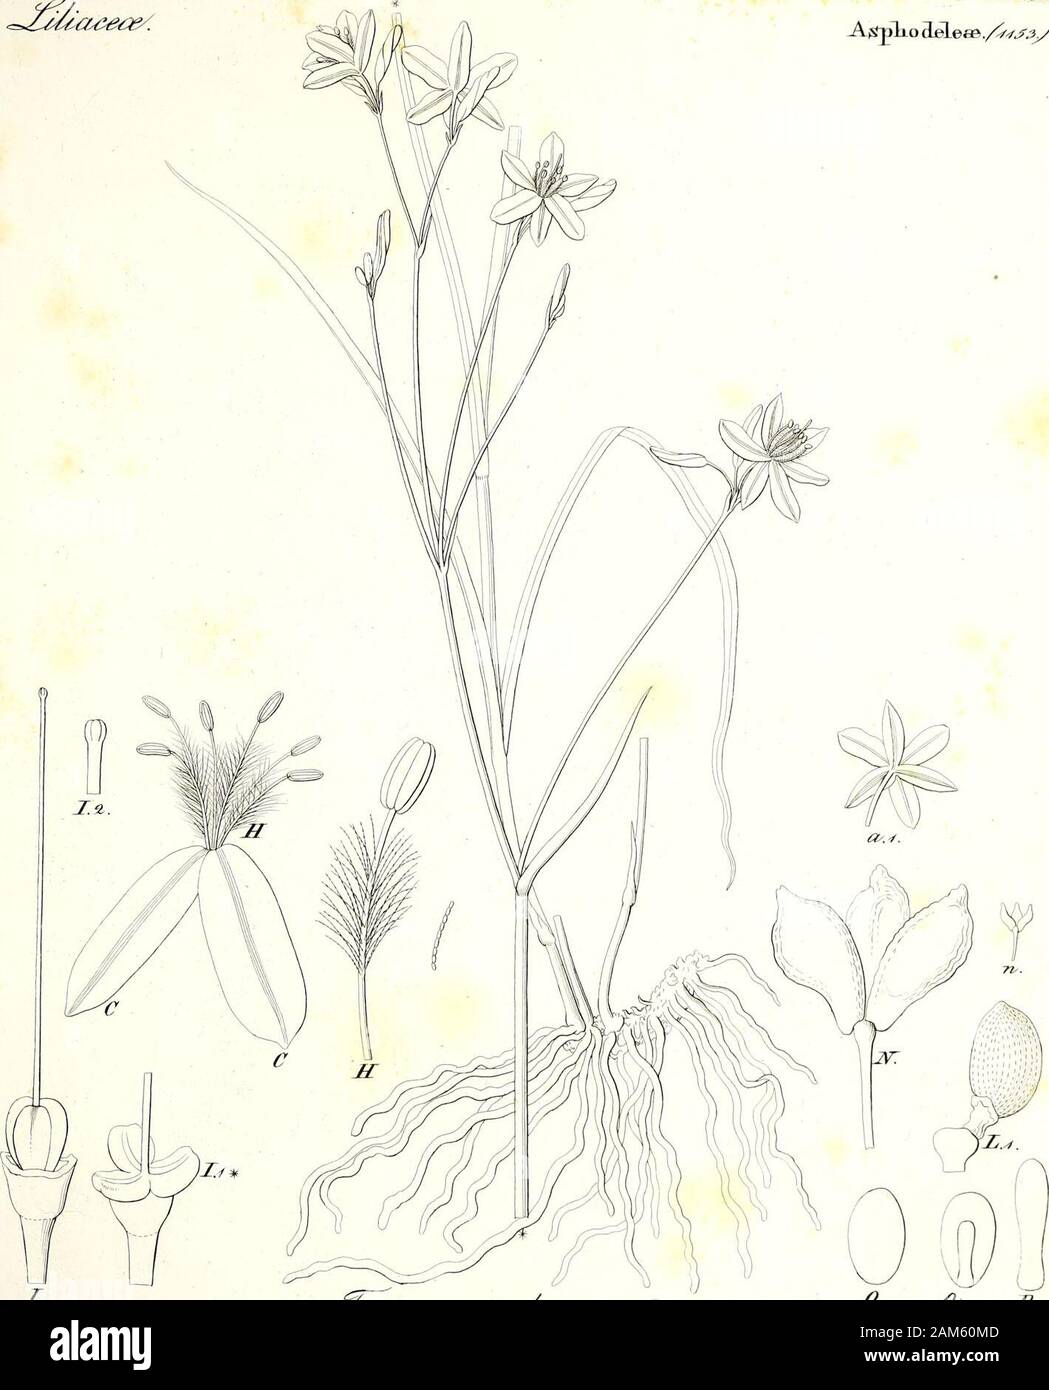 Iconographia generum plantarum . &. /rf/) J AjSplio ddeaa./5y^/. I rz^^^/Ti^f^/afam &lt;%.&lt;3$z& ./^j?7&lt;fj Stock Photo